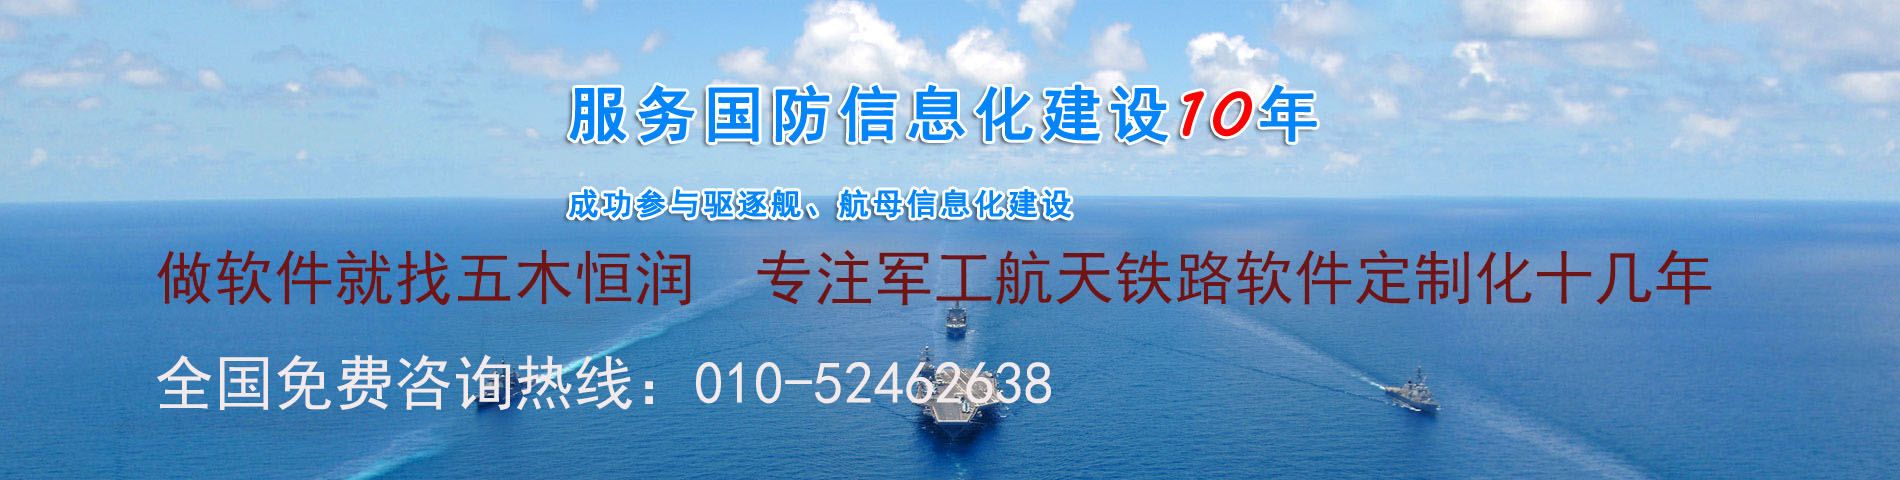 船舶油耗监控管理系统-北京软件开发公司华盛恒辉